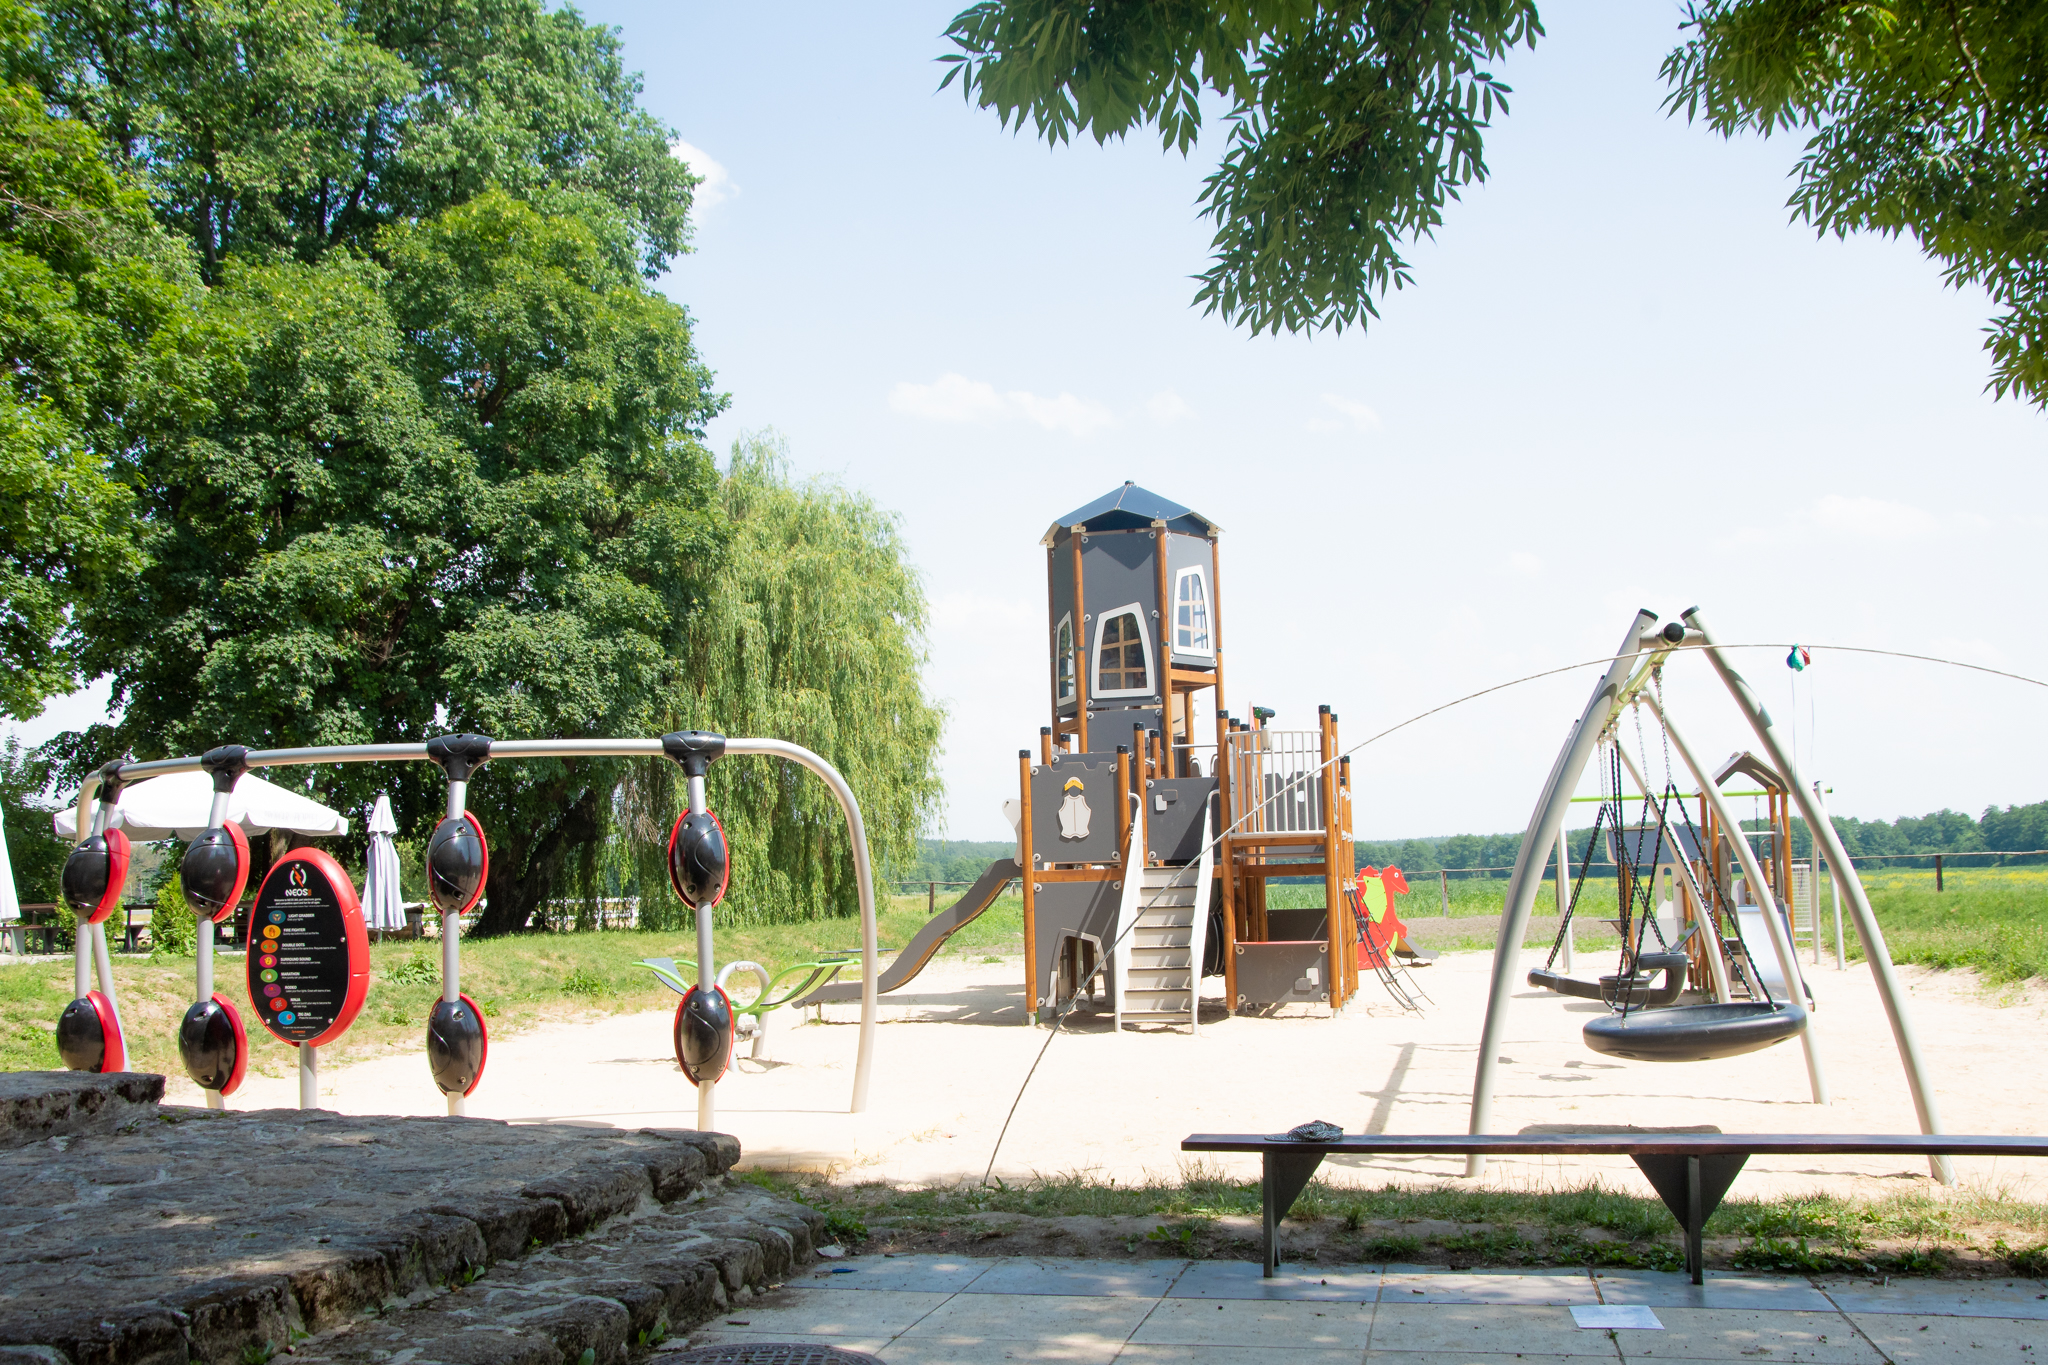 Plac zabaw położony w atrakcji w Kurozekach, tuż nieopodal Pałacu.